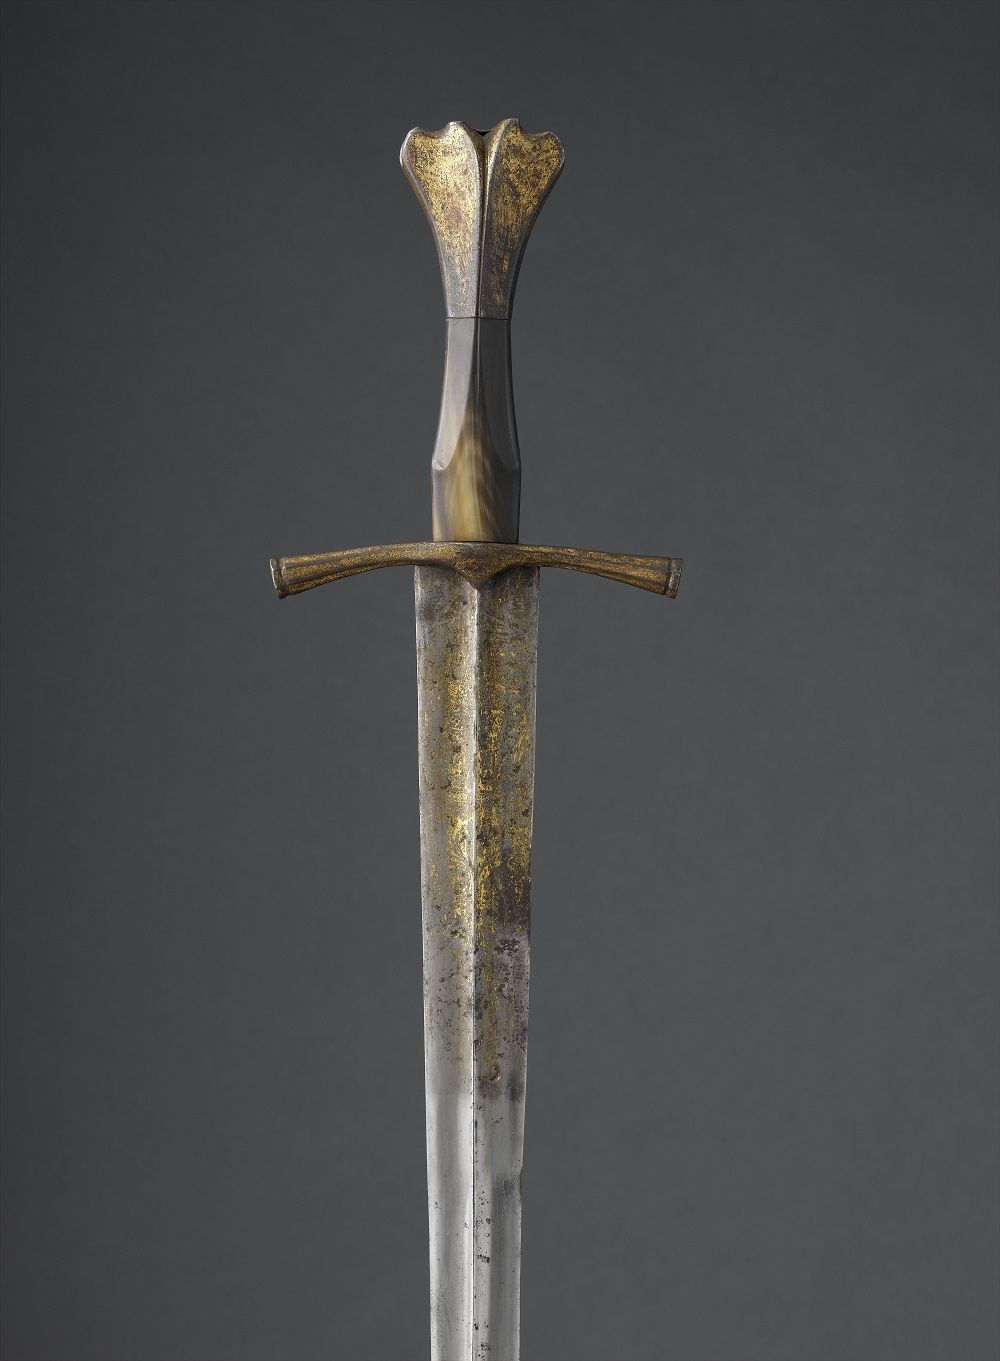 أحد السيوف الأثرية فى متحف اللوفر أبوظبى